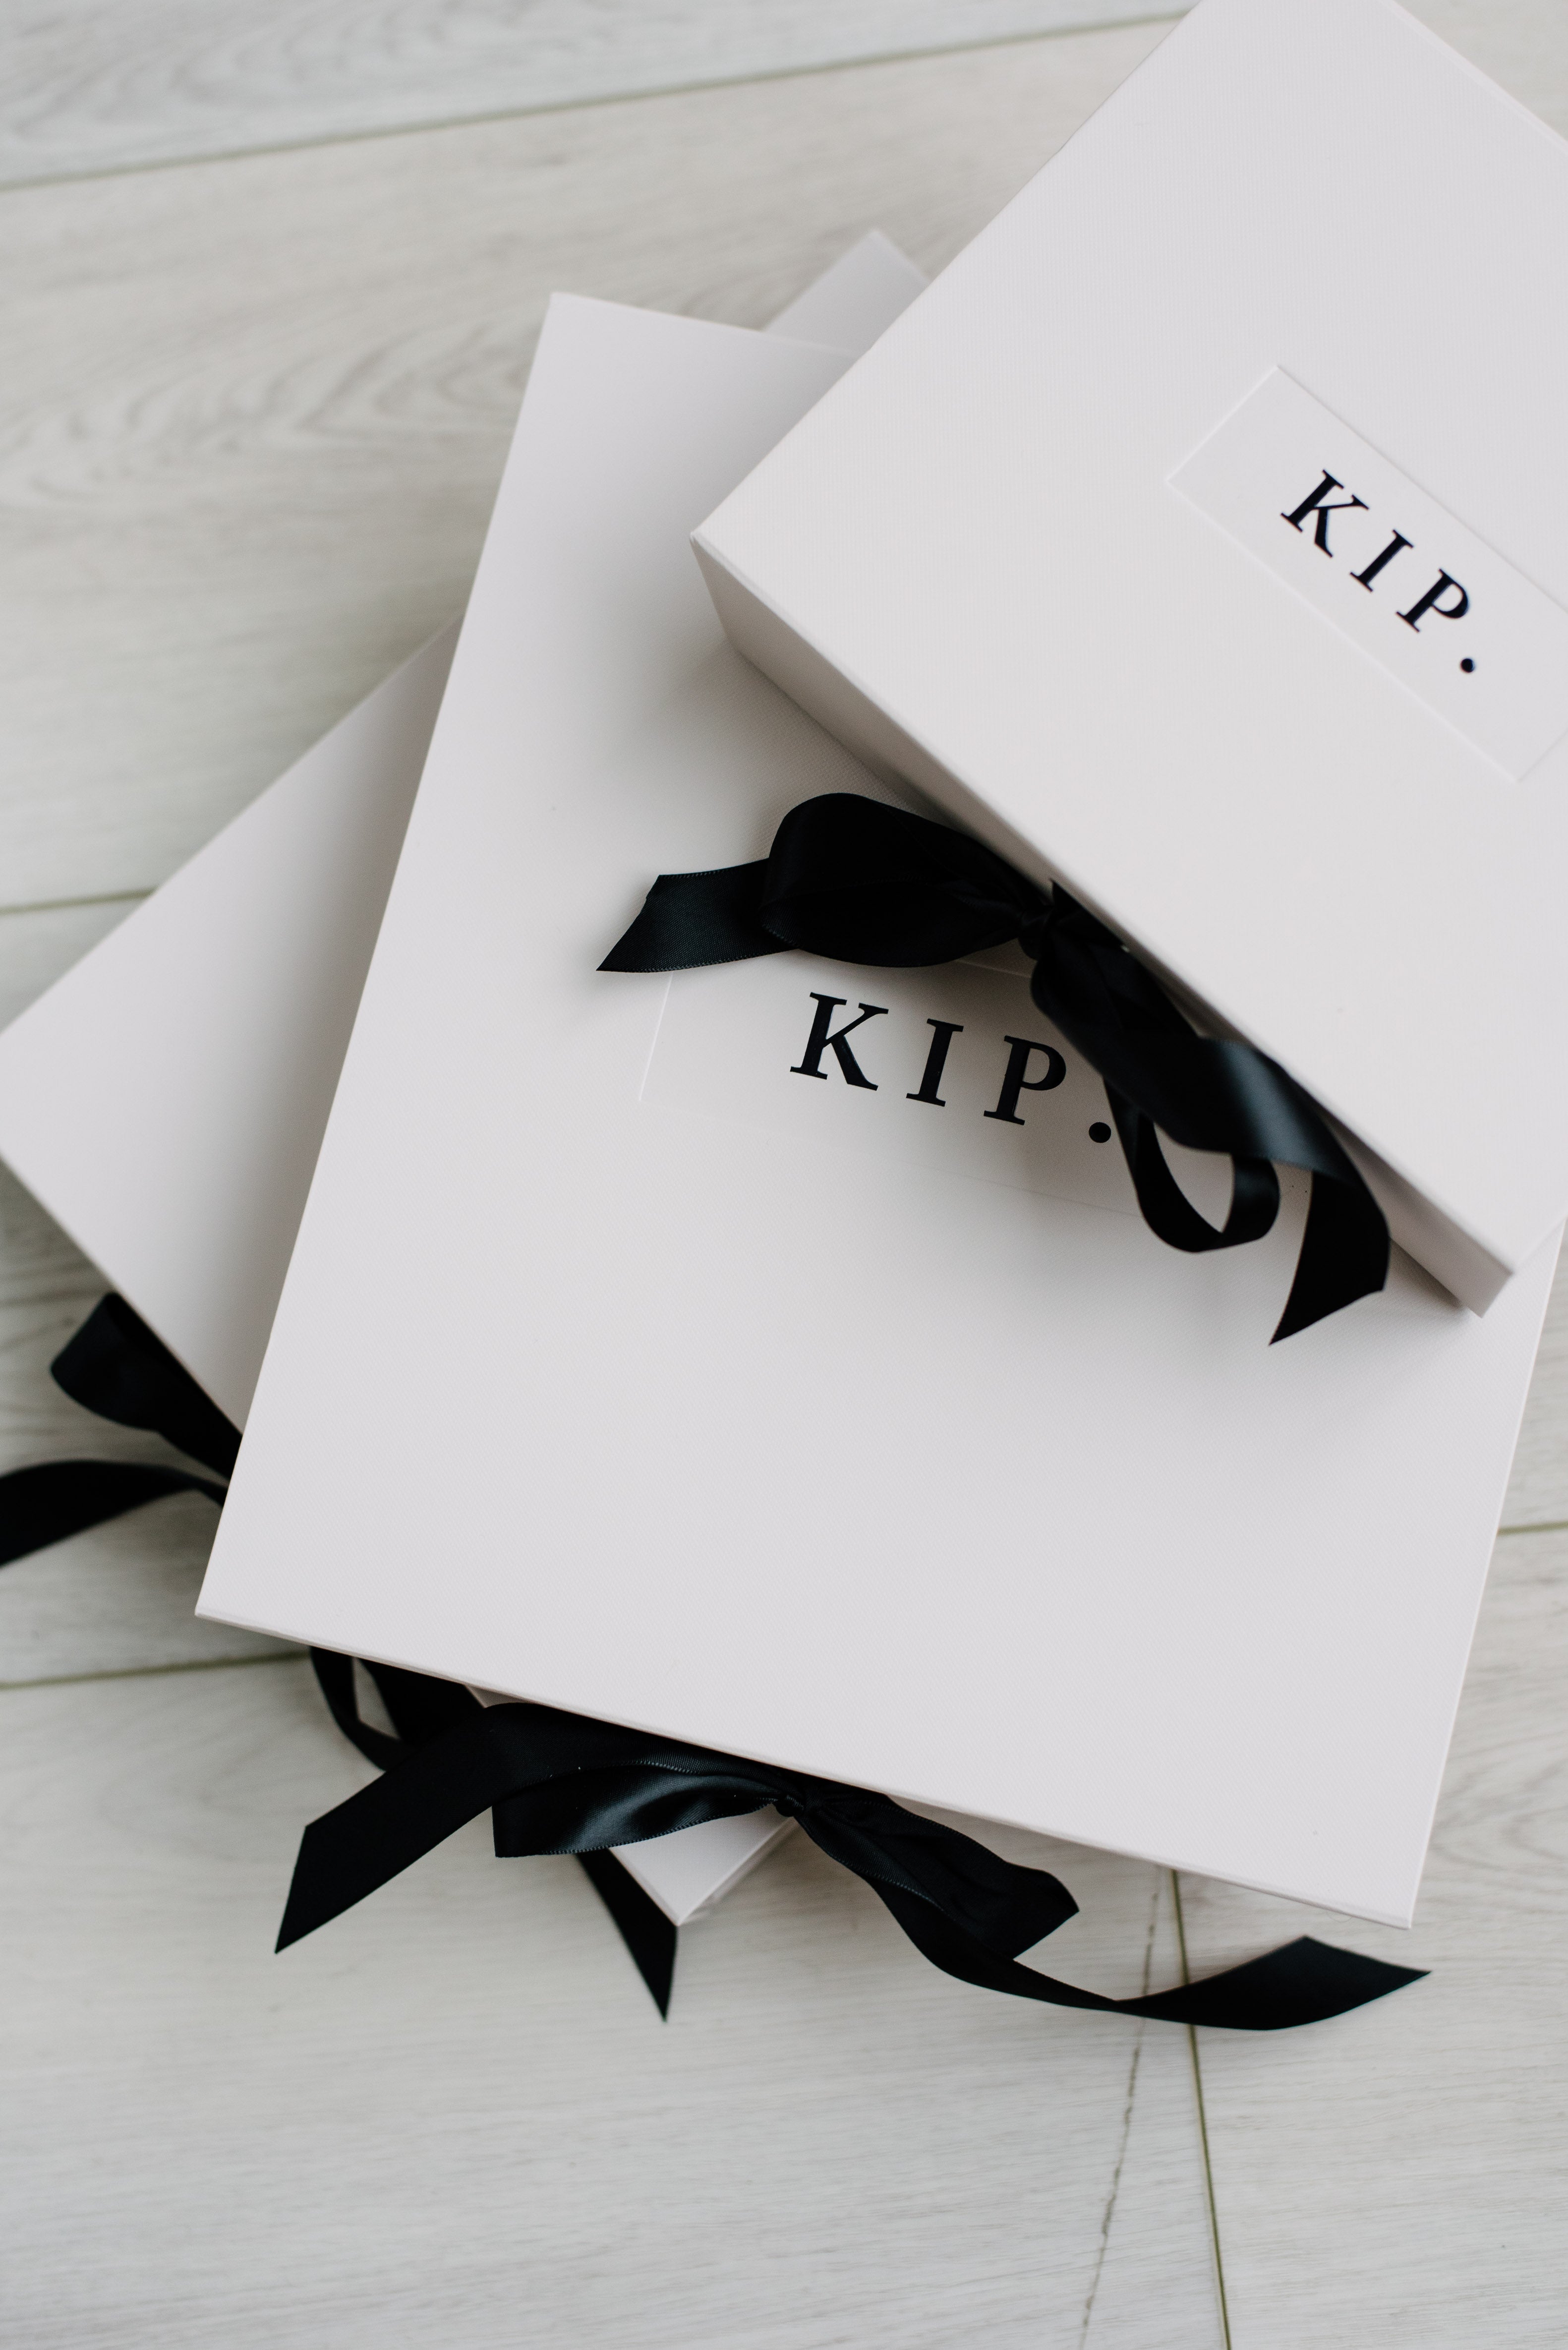 KIP Premium Cotton Pajama Set in Mist Blue